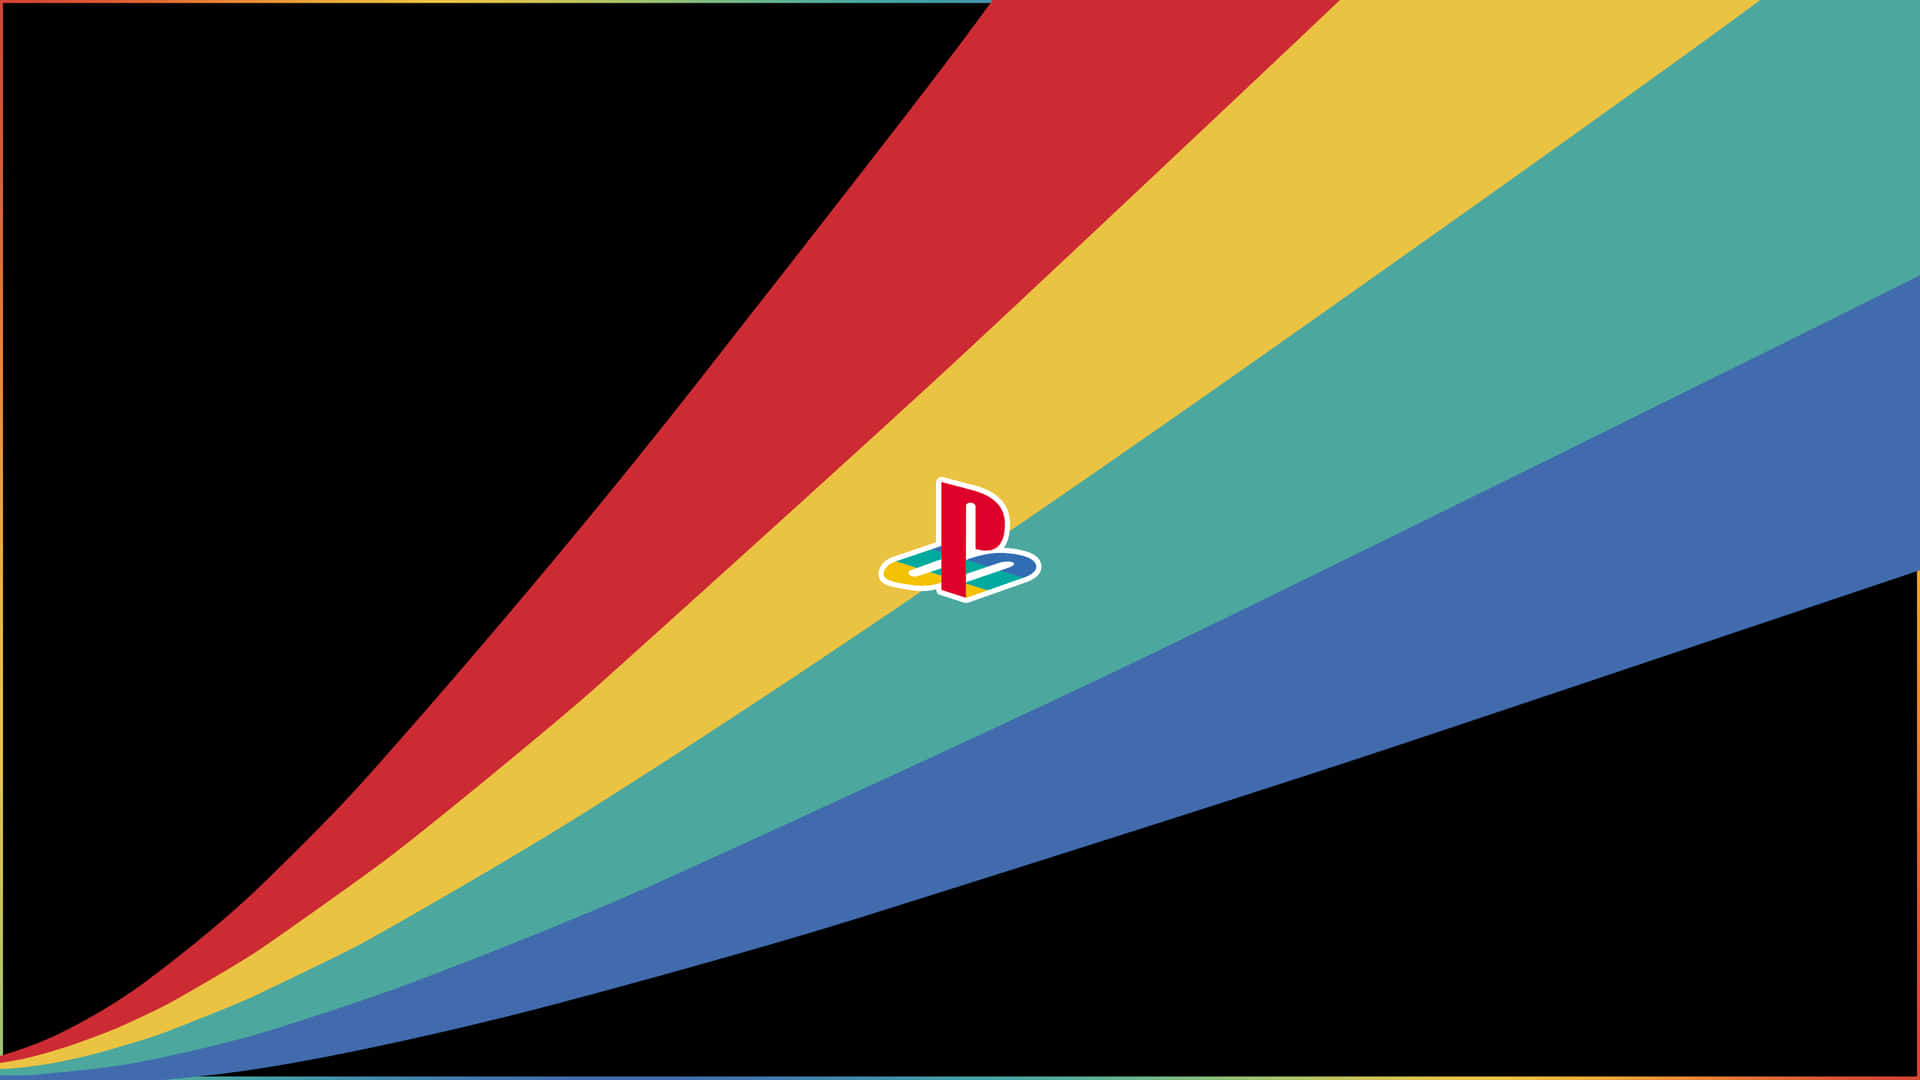 Umfundo Colorido Com Um Arco-íris E O Logotipo Do Playstation. Papel de Parede